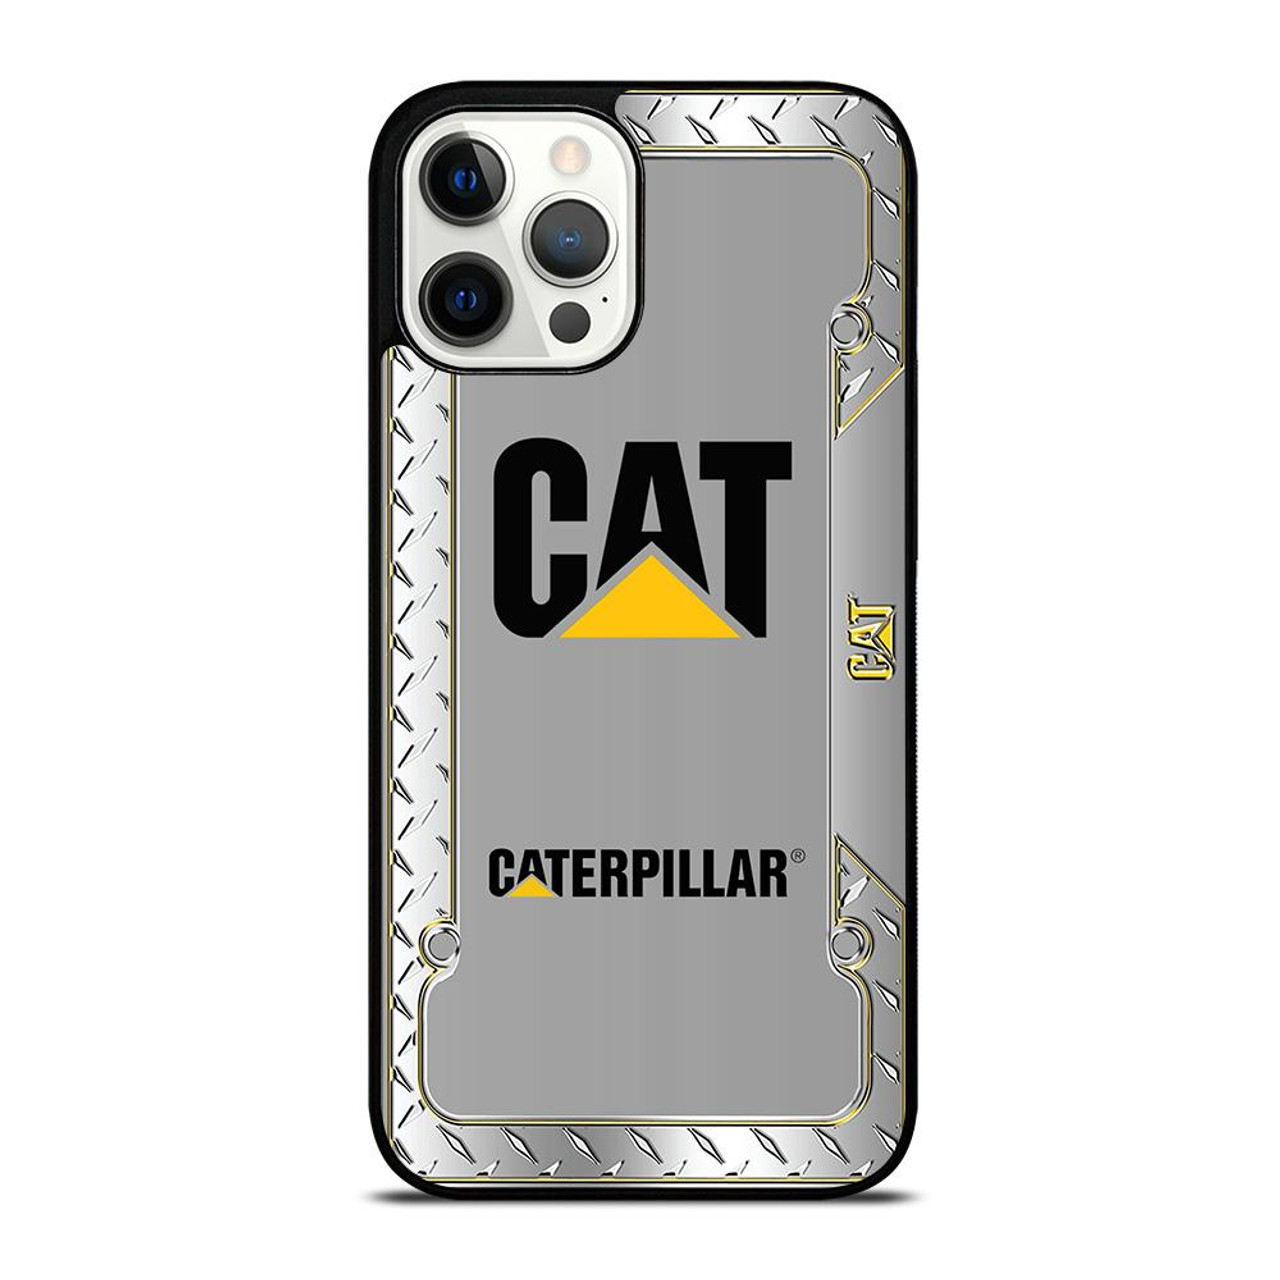 CATERPILLAR CAT 3 iPhone 12 Pro Max Case Cover